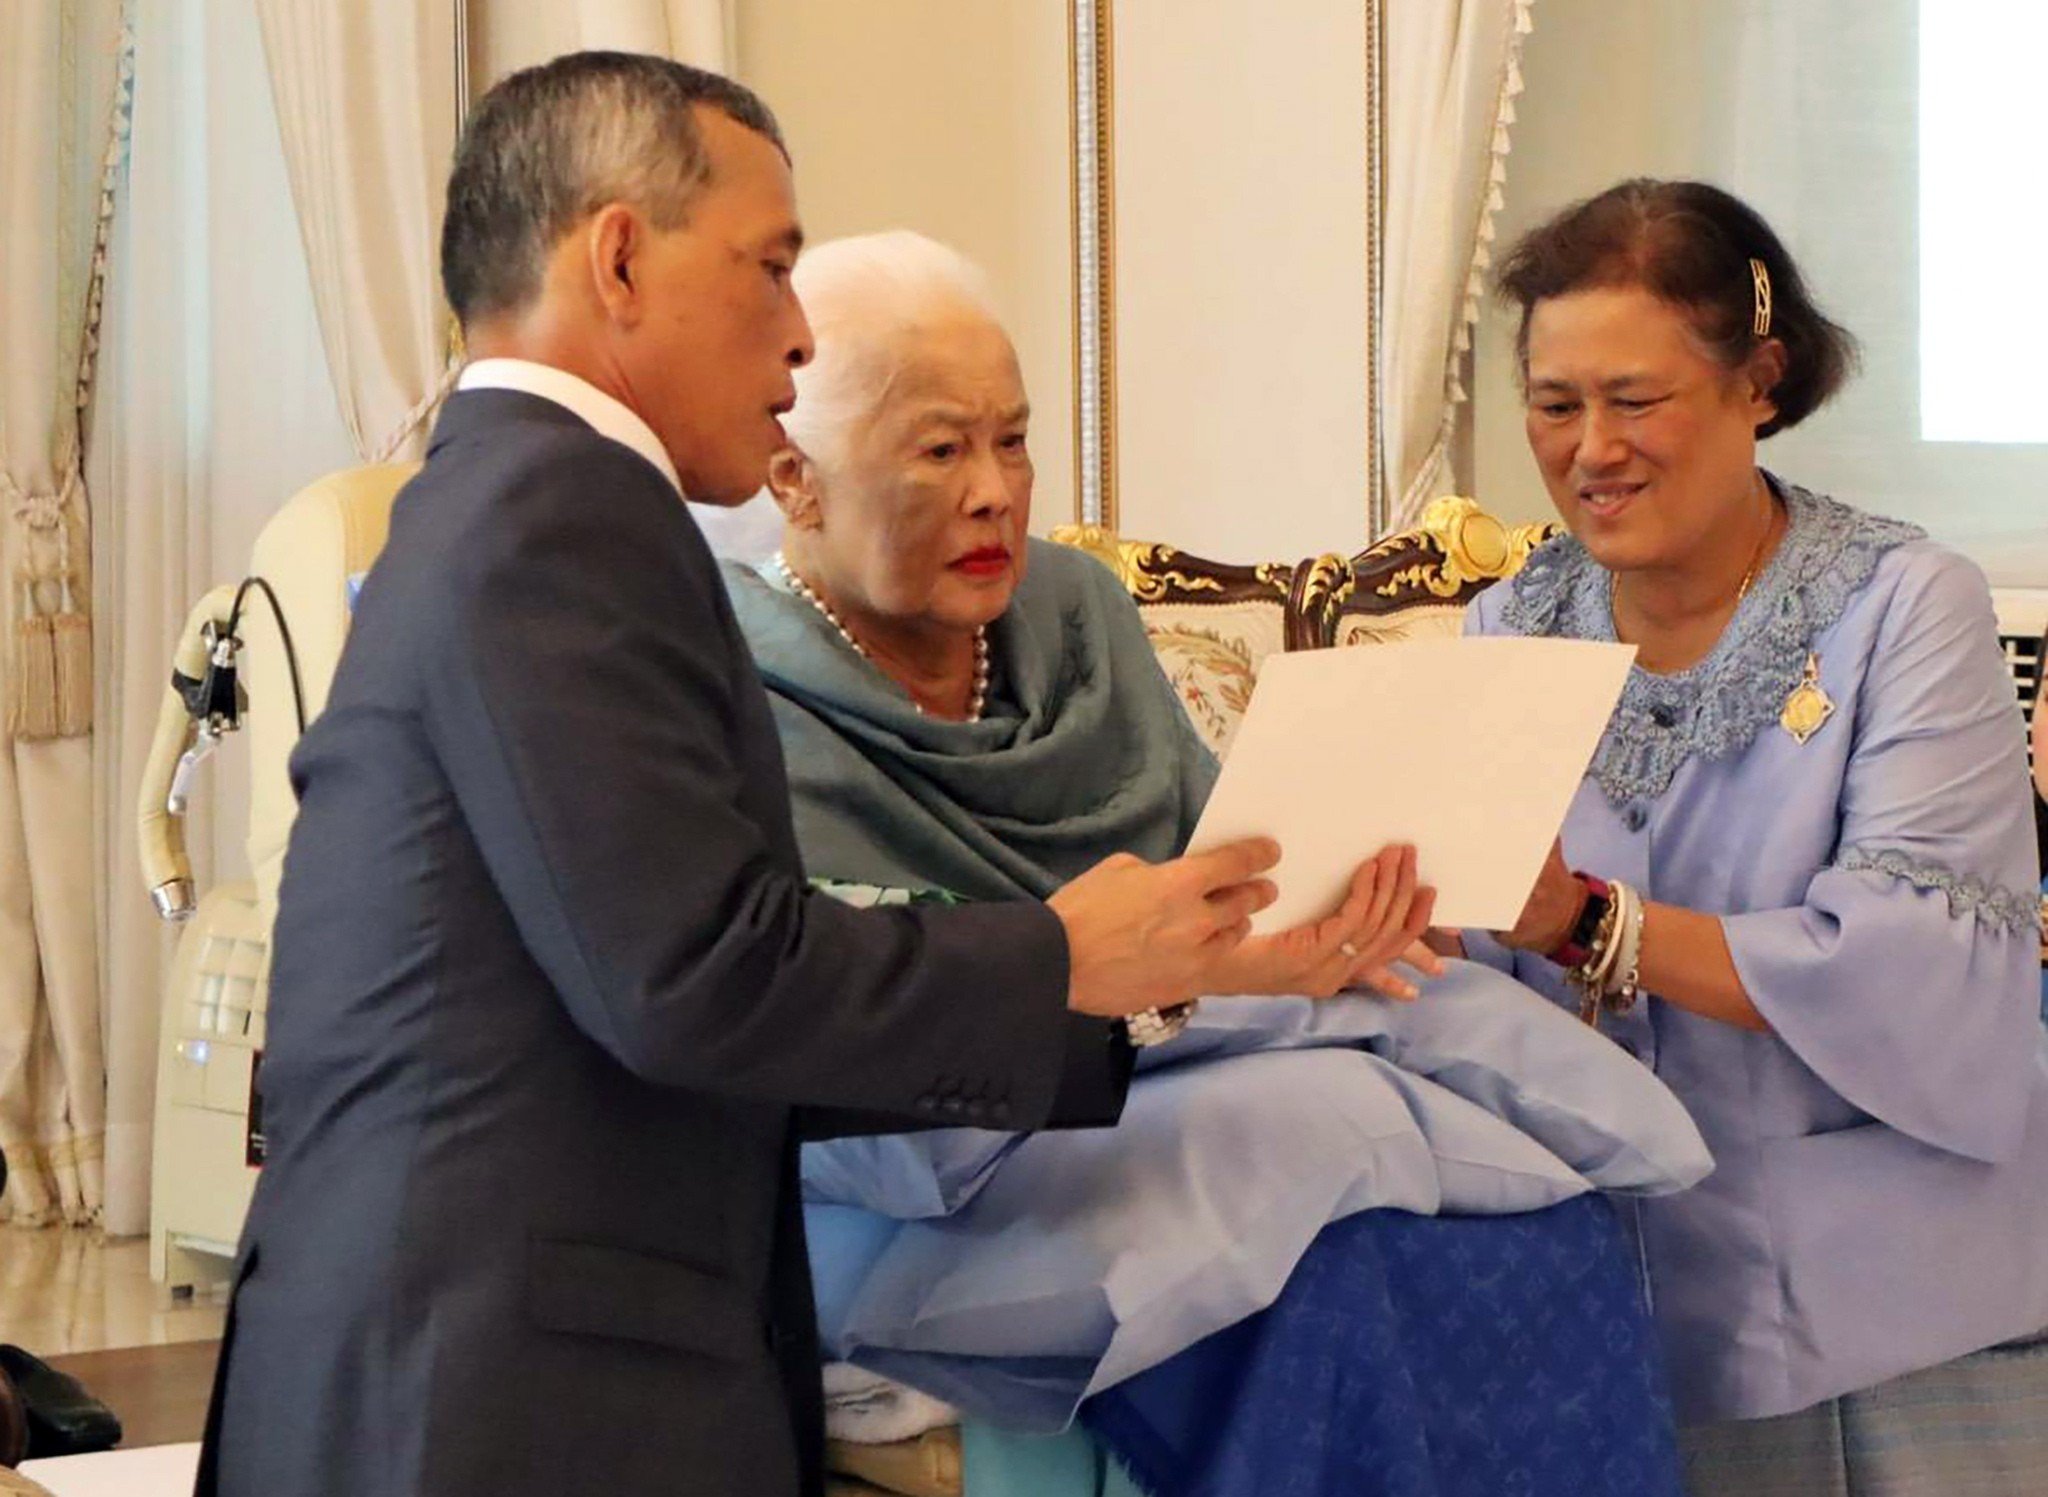 Thailand’s King Maha Vajiralongkorn, his mother Queen Sirikit and Princess Maha Chakri Sirindhorn. Photo: EPA